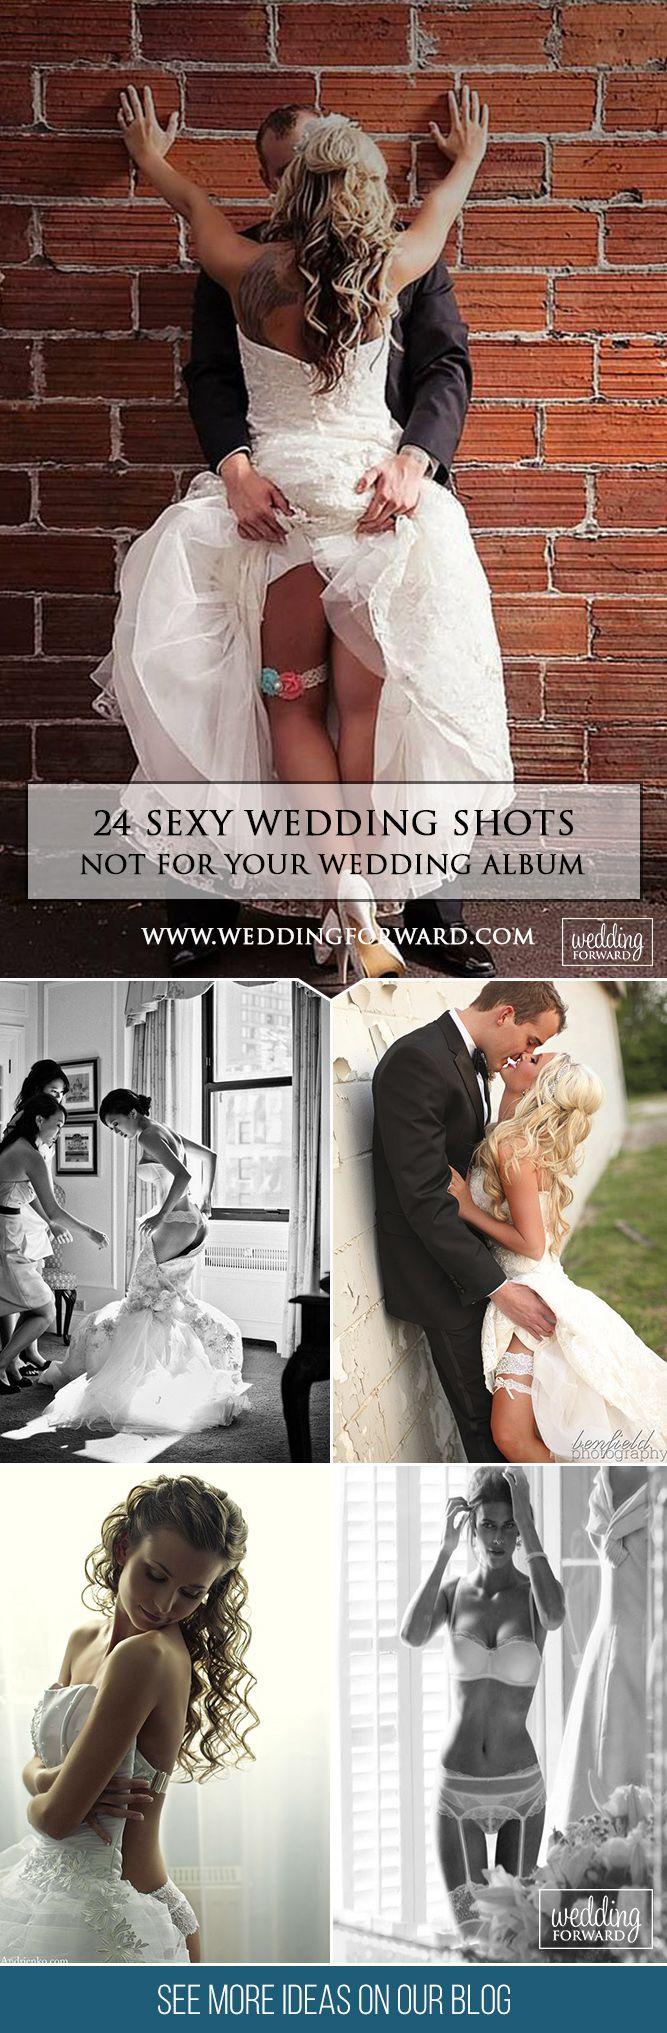 Hochzeit - 24 Sexy Wedding Pictures Not For Your Wedding Album